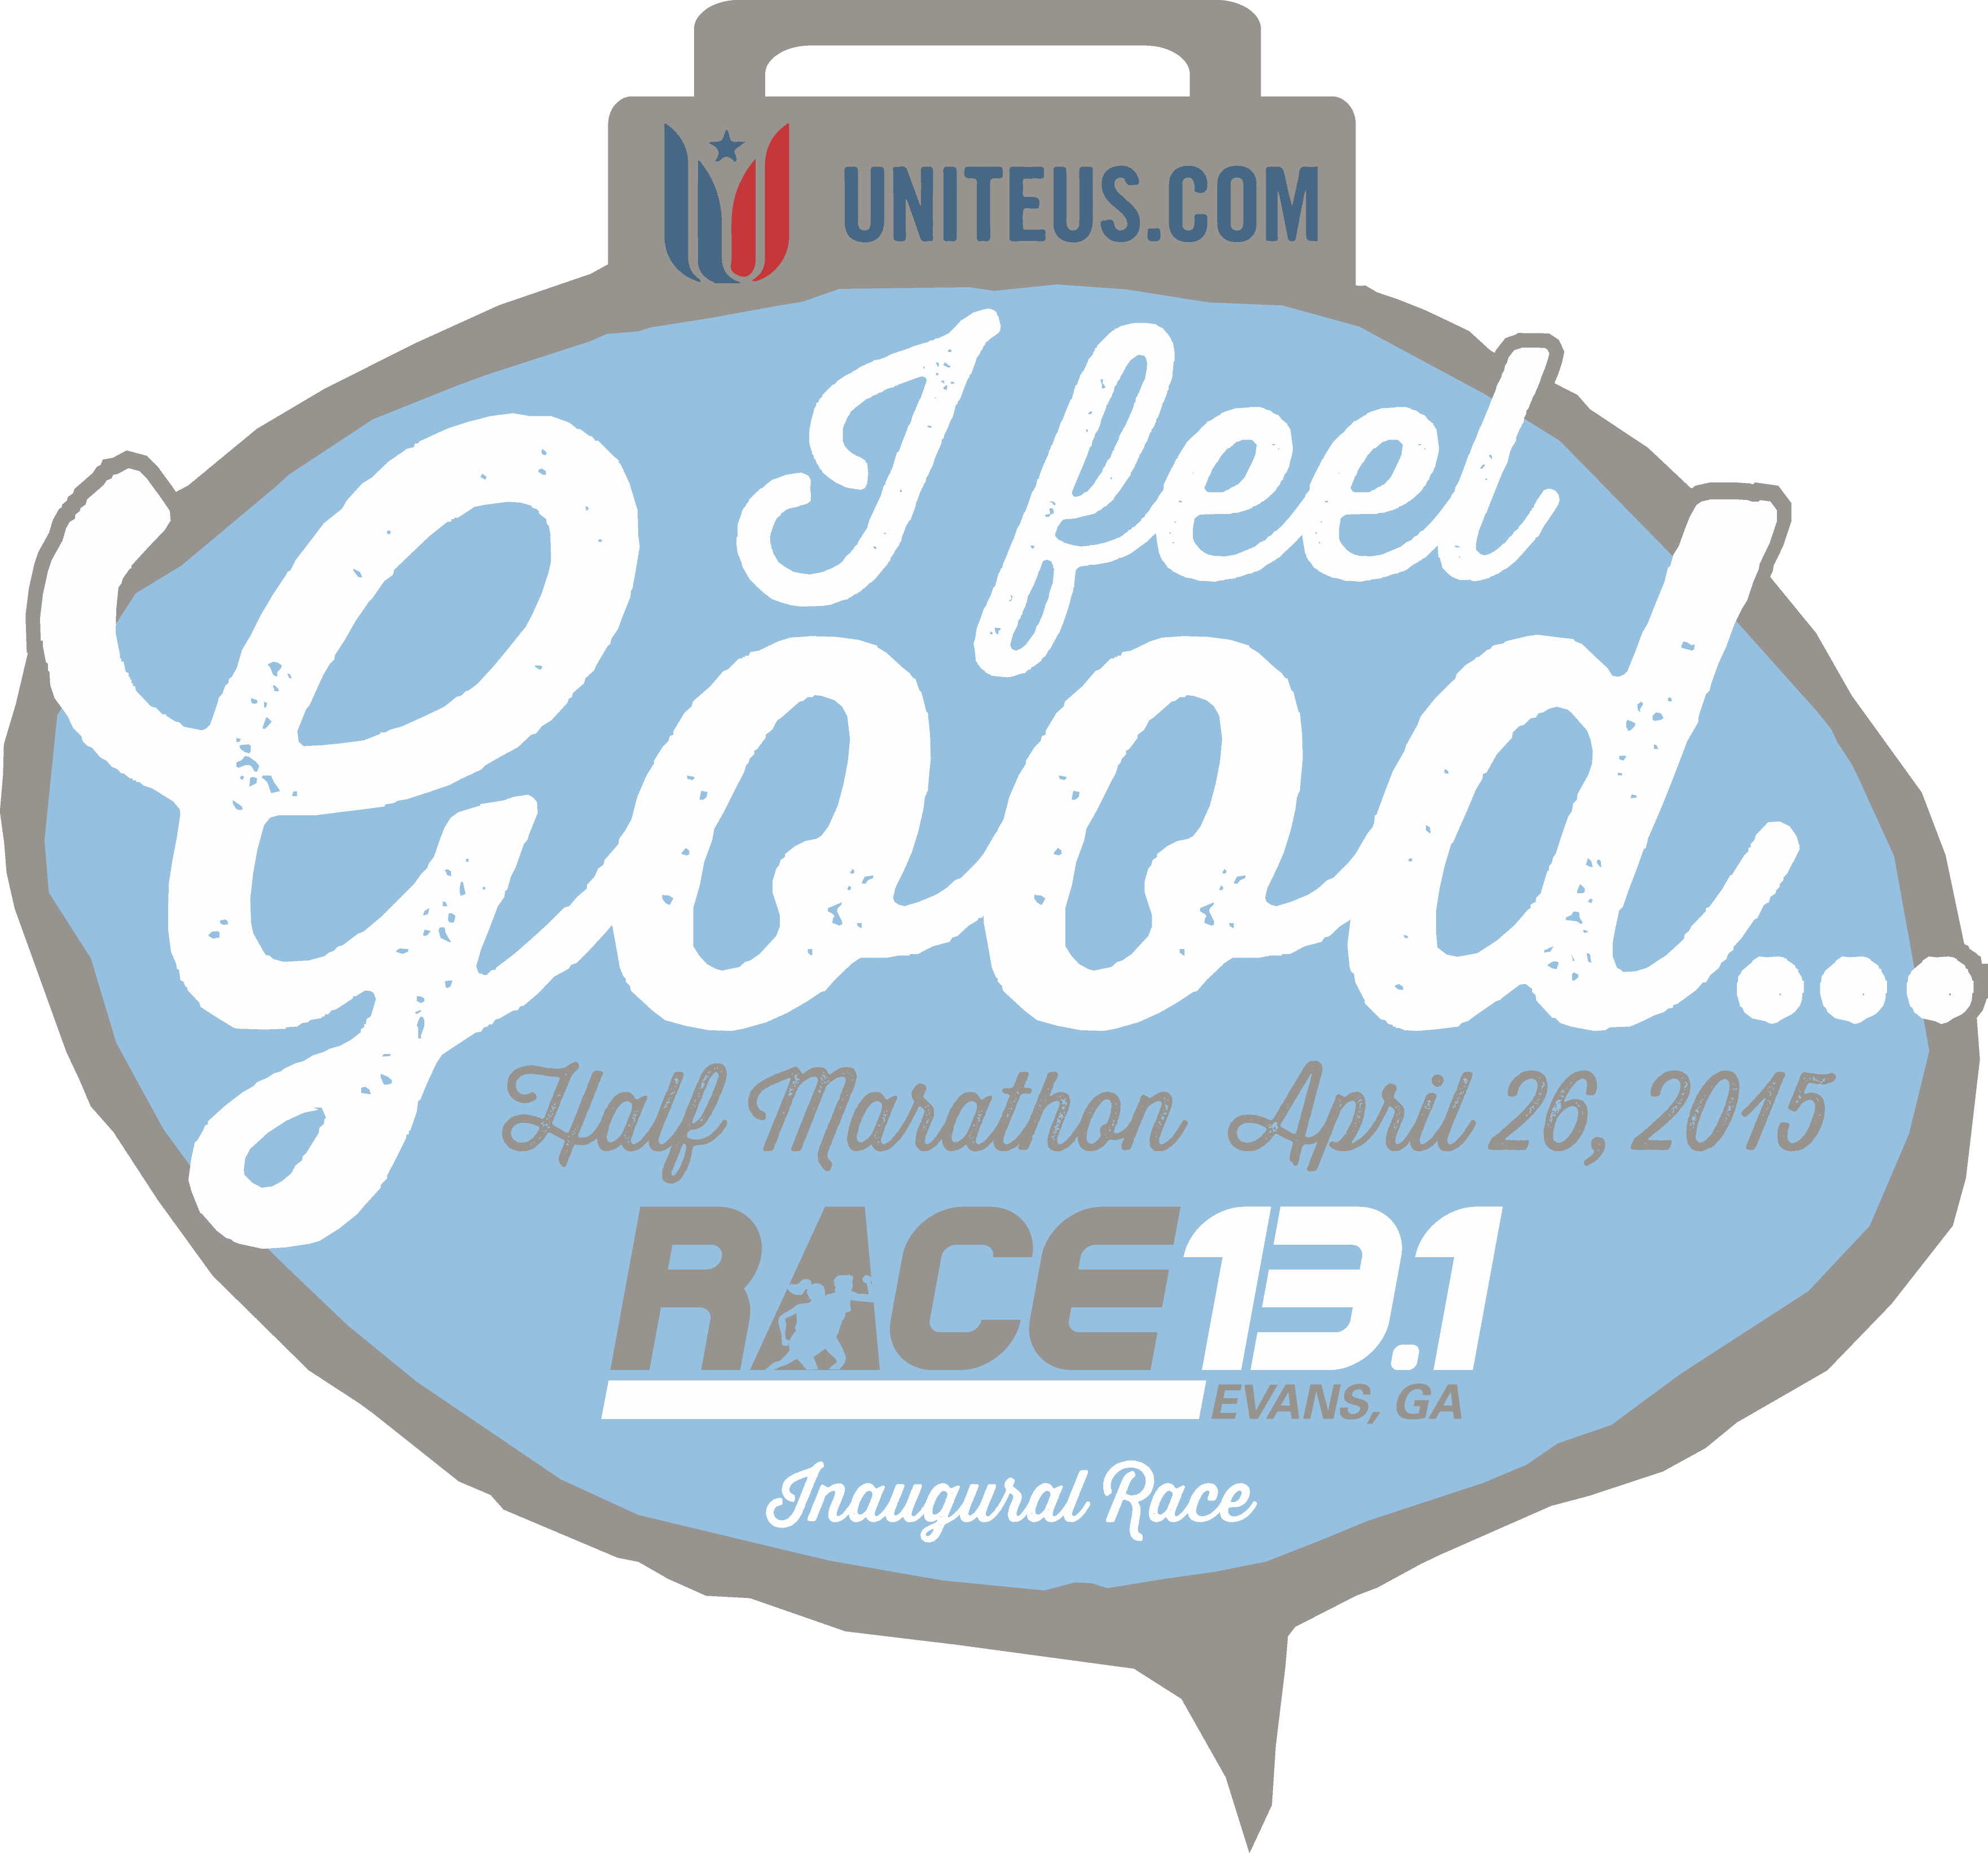 Race 13.1 Evans, GA logo on RaceRaves